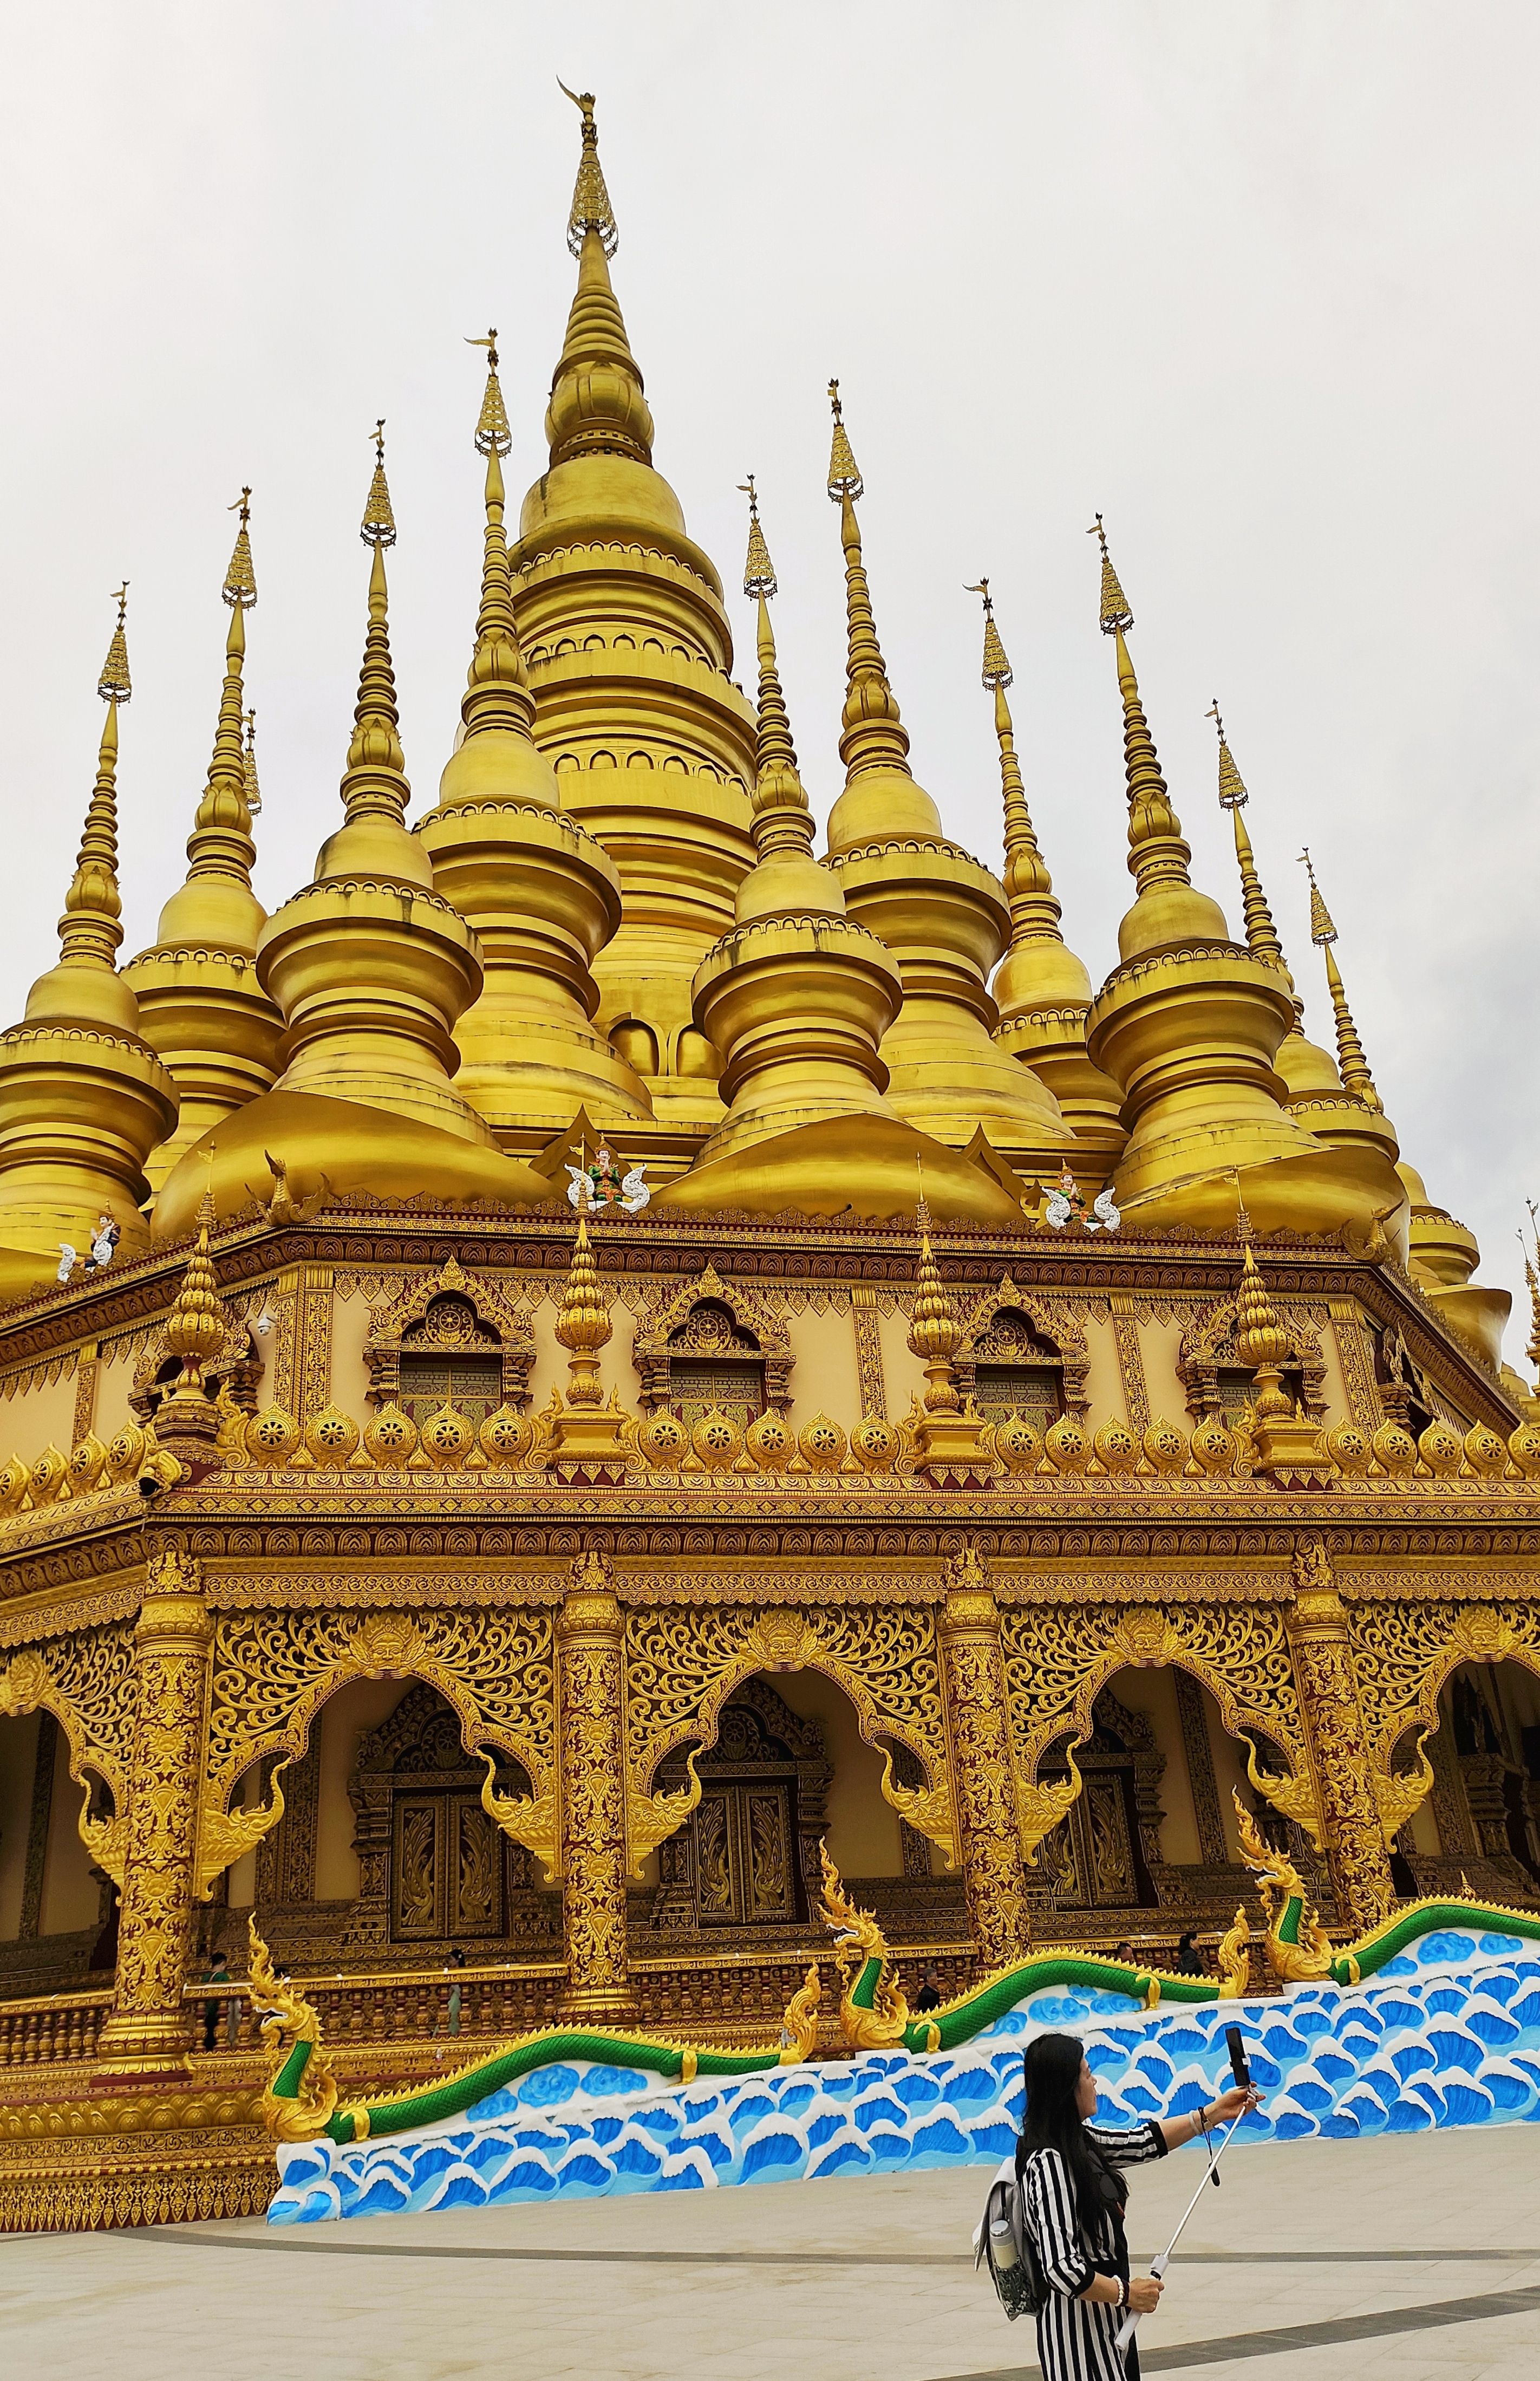 有个东南亚体量最大的金塔,又称缅甸大金塔,它建在原古代傣王朝的皇家